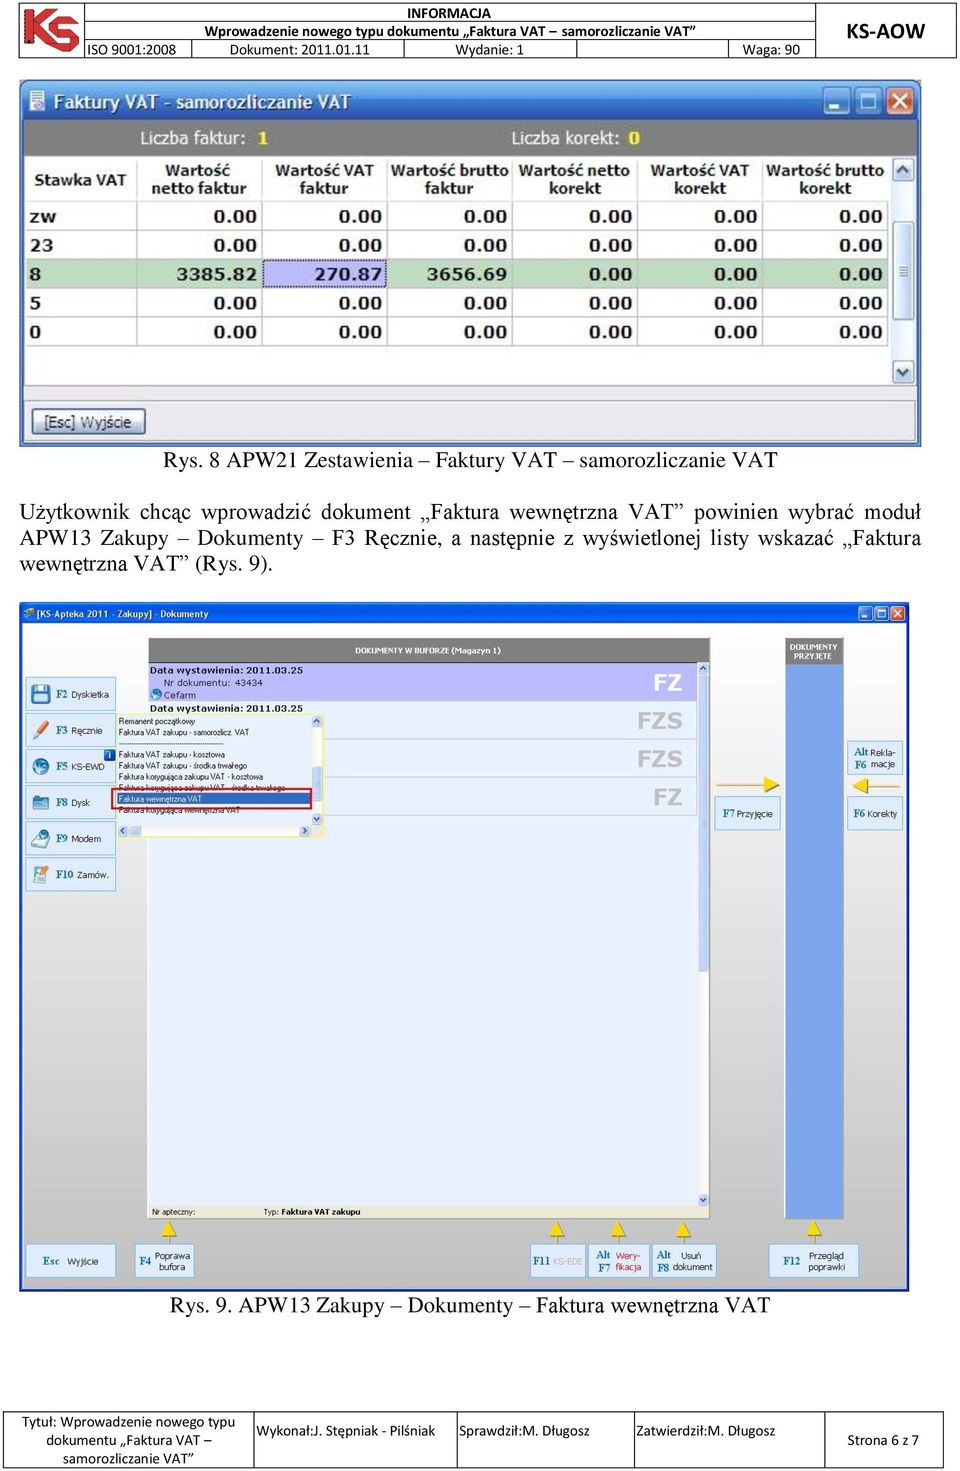 dokument Faktura wewnętrzna VAT powinien wybrać moduł APW13 Zakupy Dokumenty F3